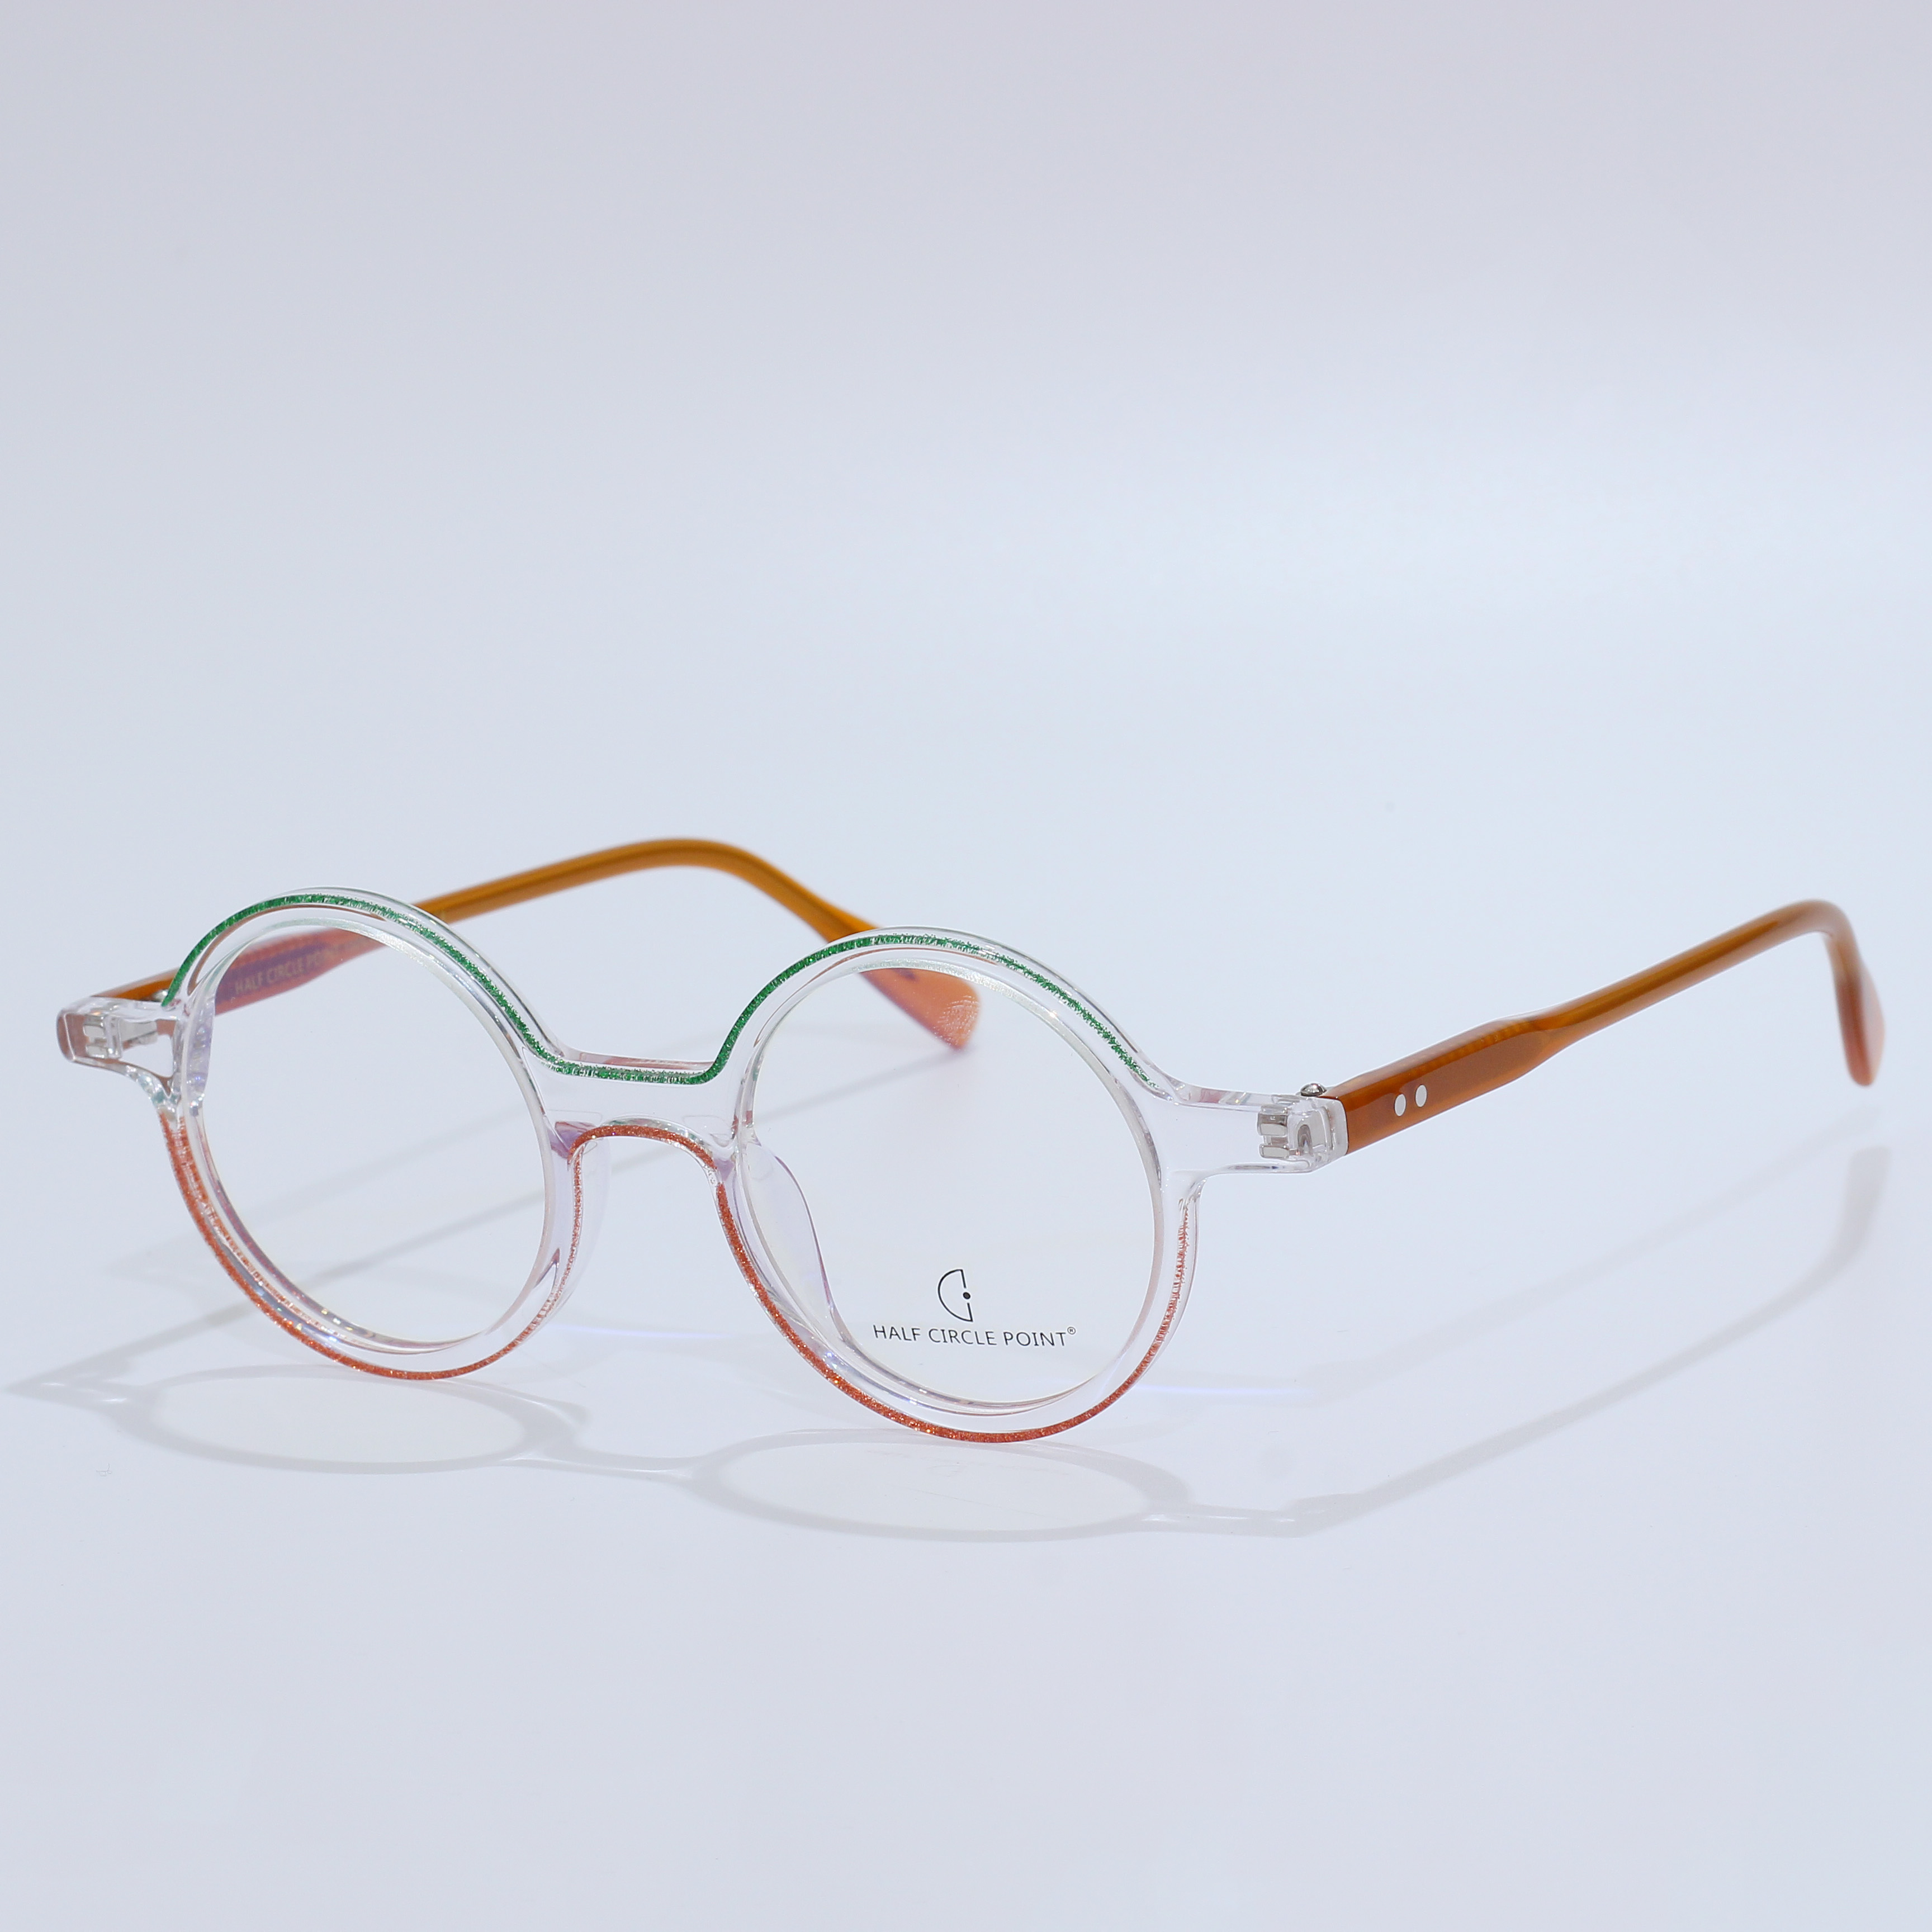 High Quality Acetate Optical Prescription Glasses Frame (5)